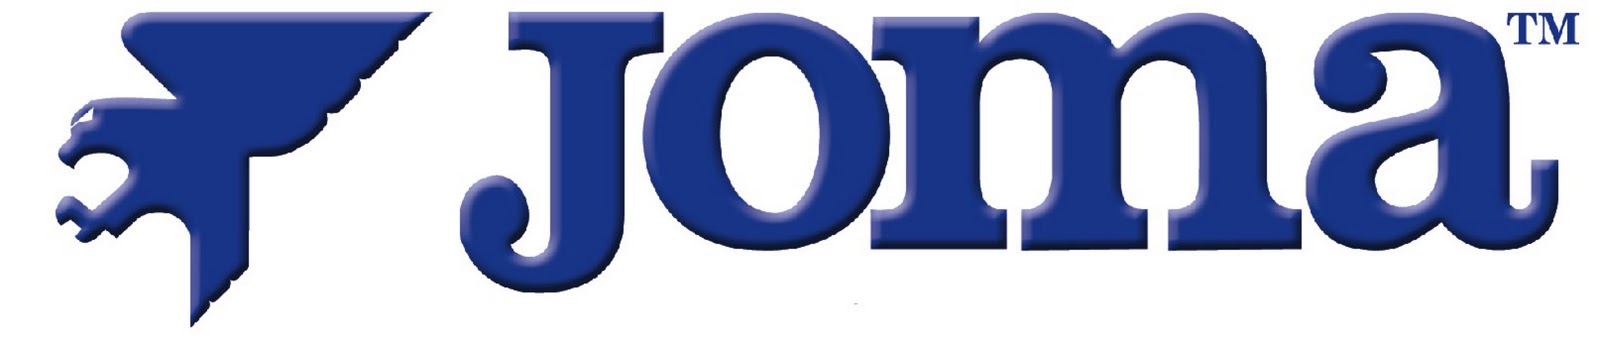 Proxama Logo photo - 1